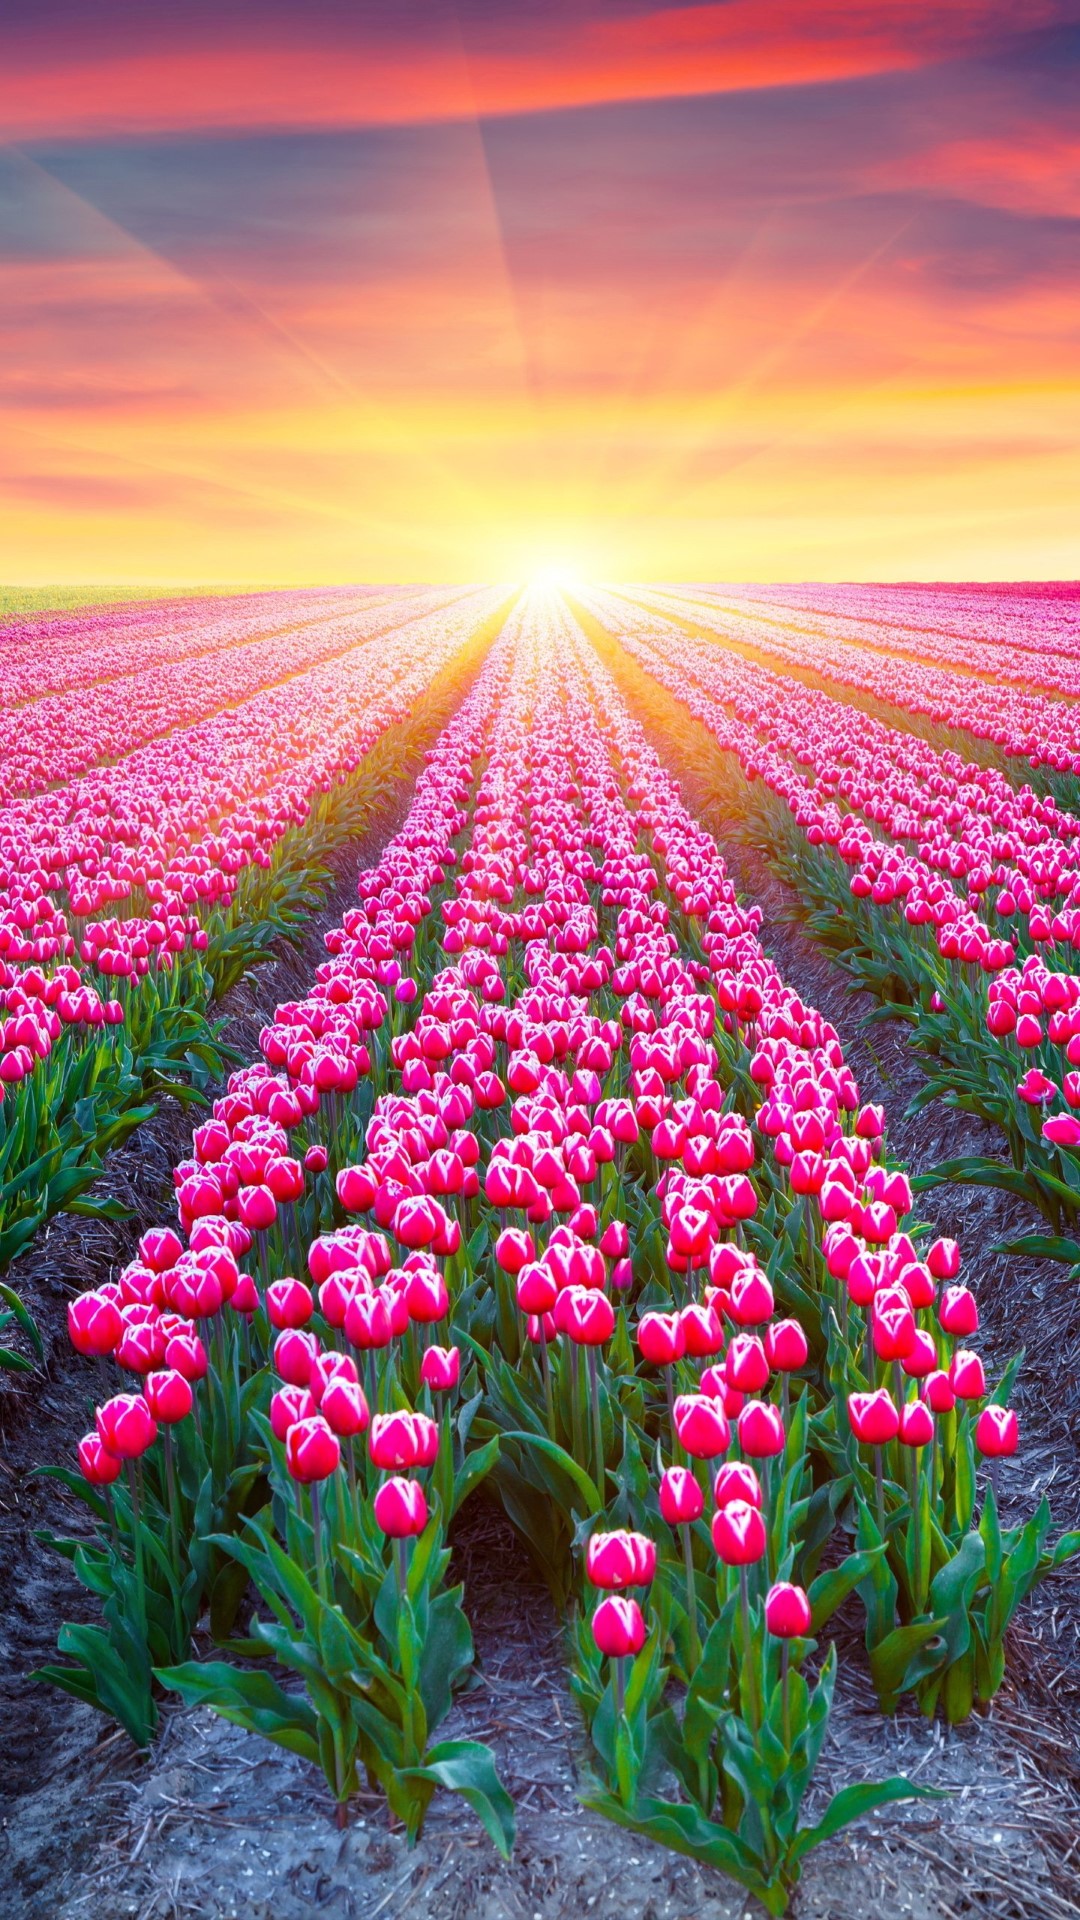 Cánh đồng hoa tulip đẹp mê mẩn ở Bắc Hà khiến giới trẻ phát sốt